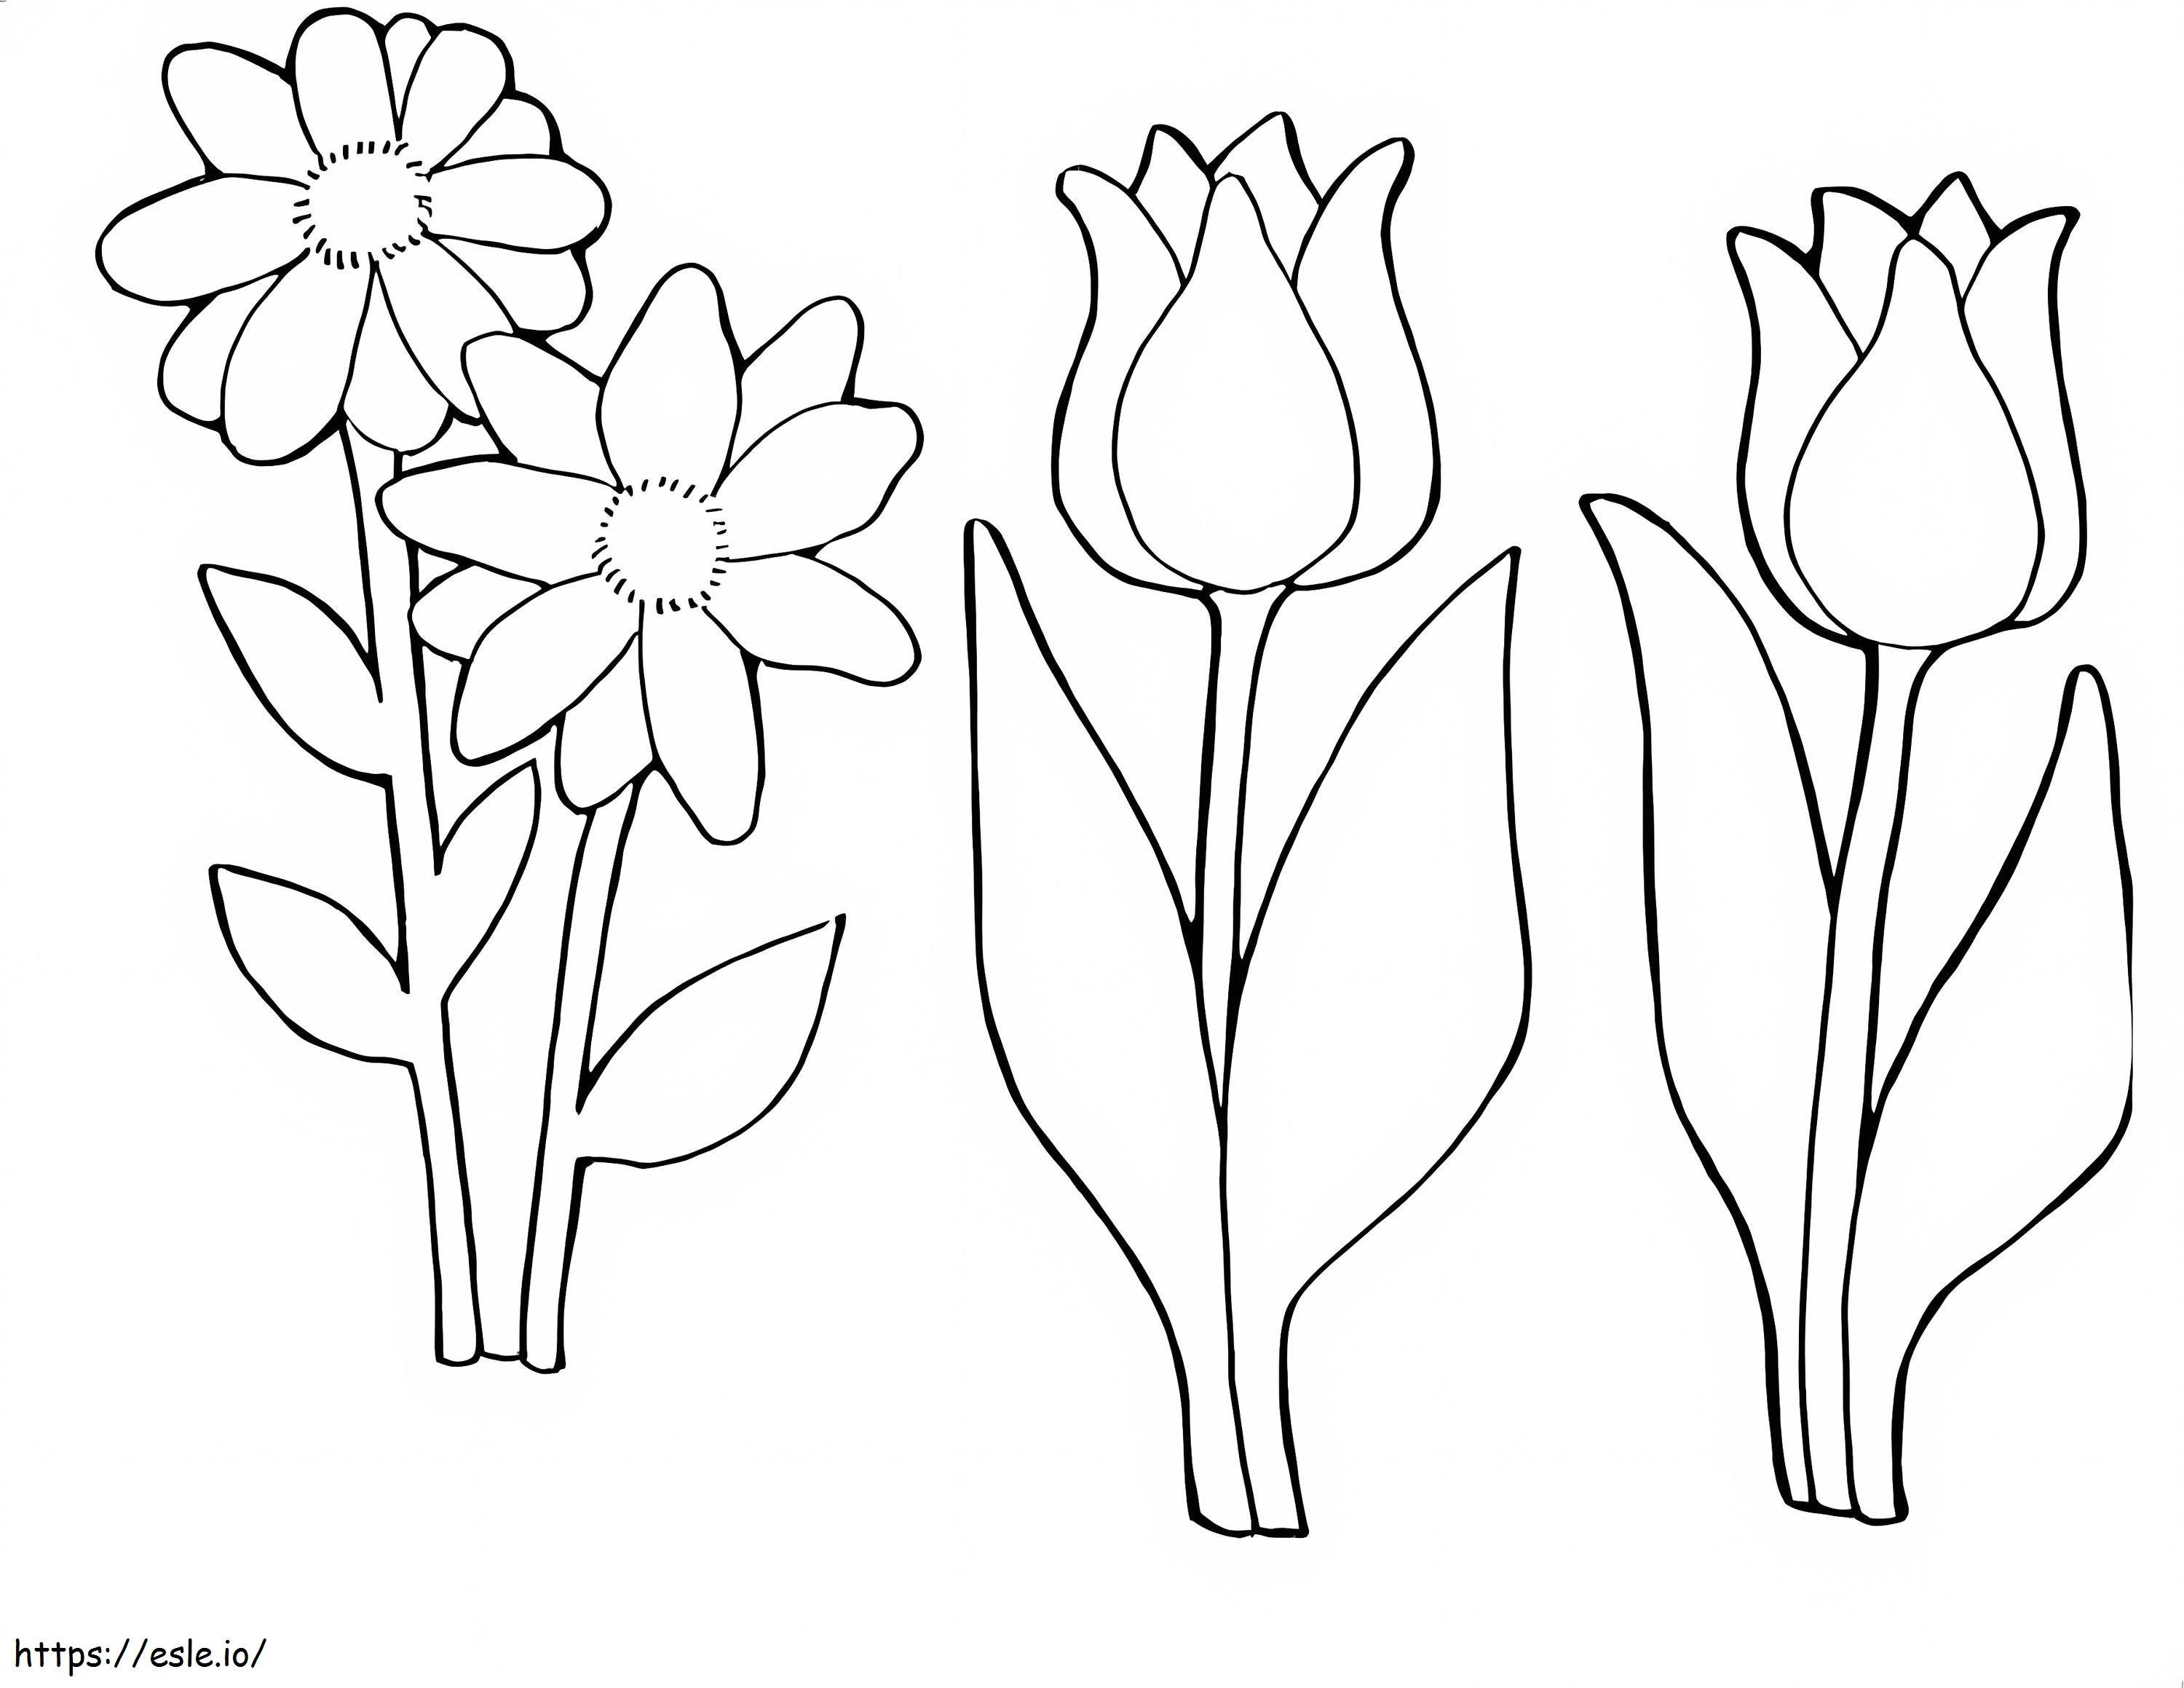 tulipán y margarita para colorear